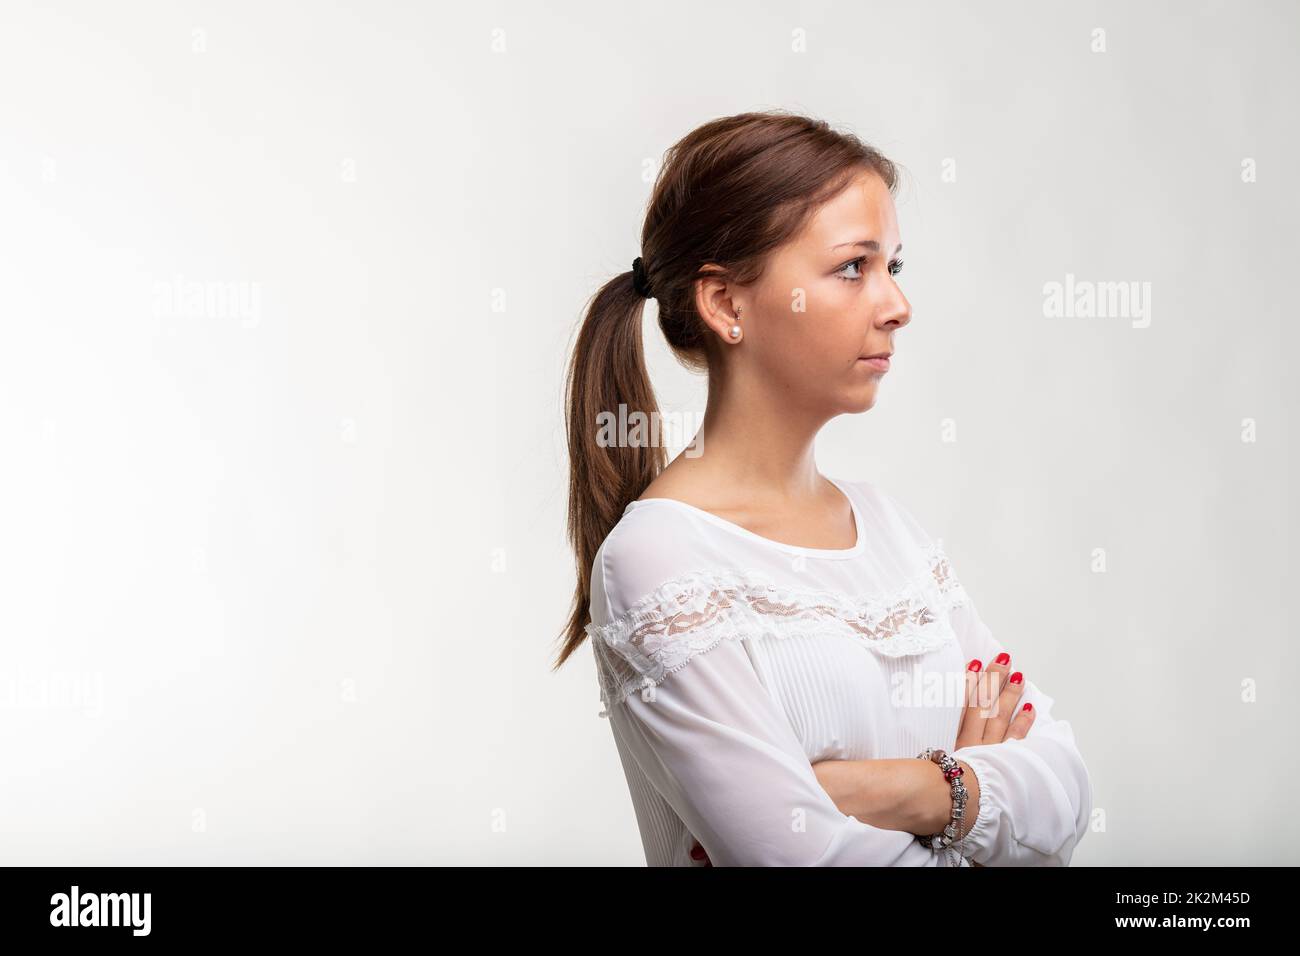 Une jeune femme calme et sûre d'elle-même debout avec les bras pliés Banque D'Images